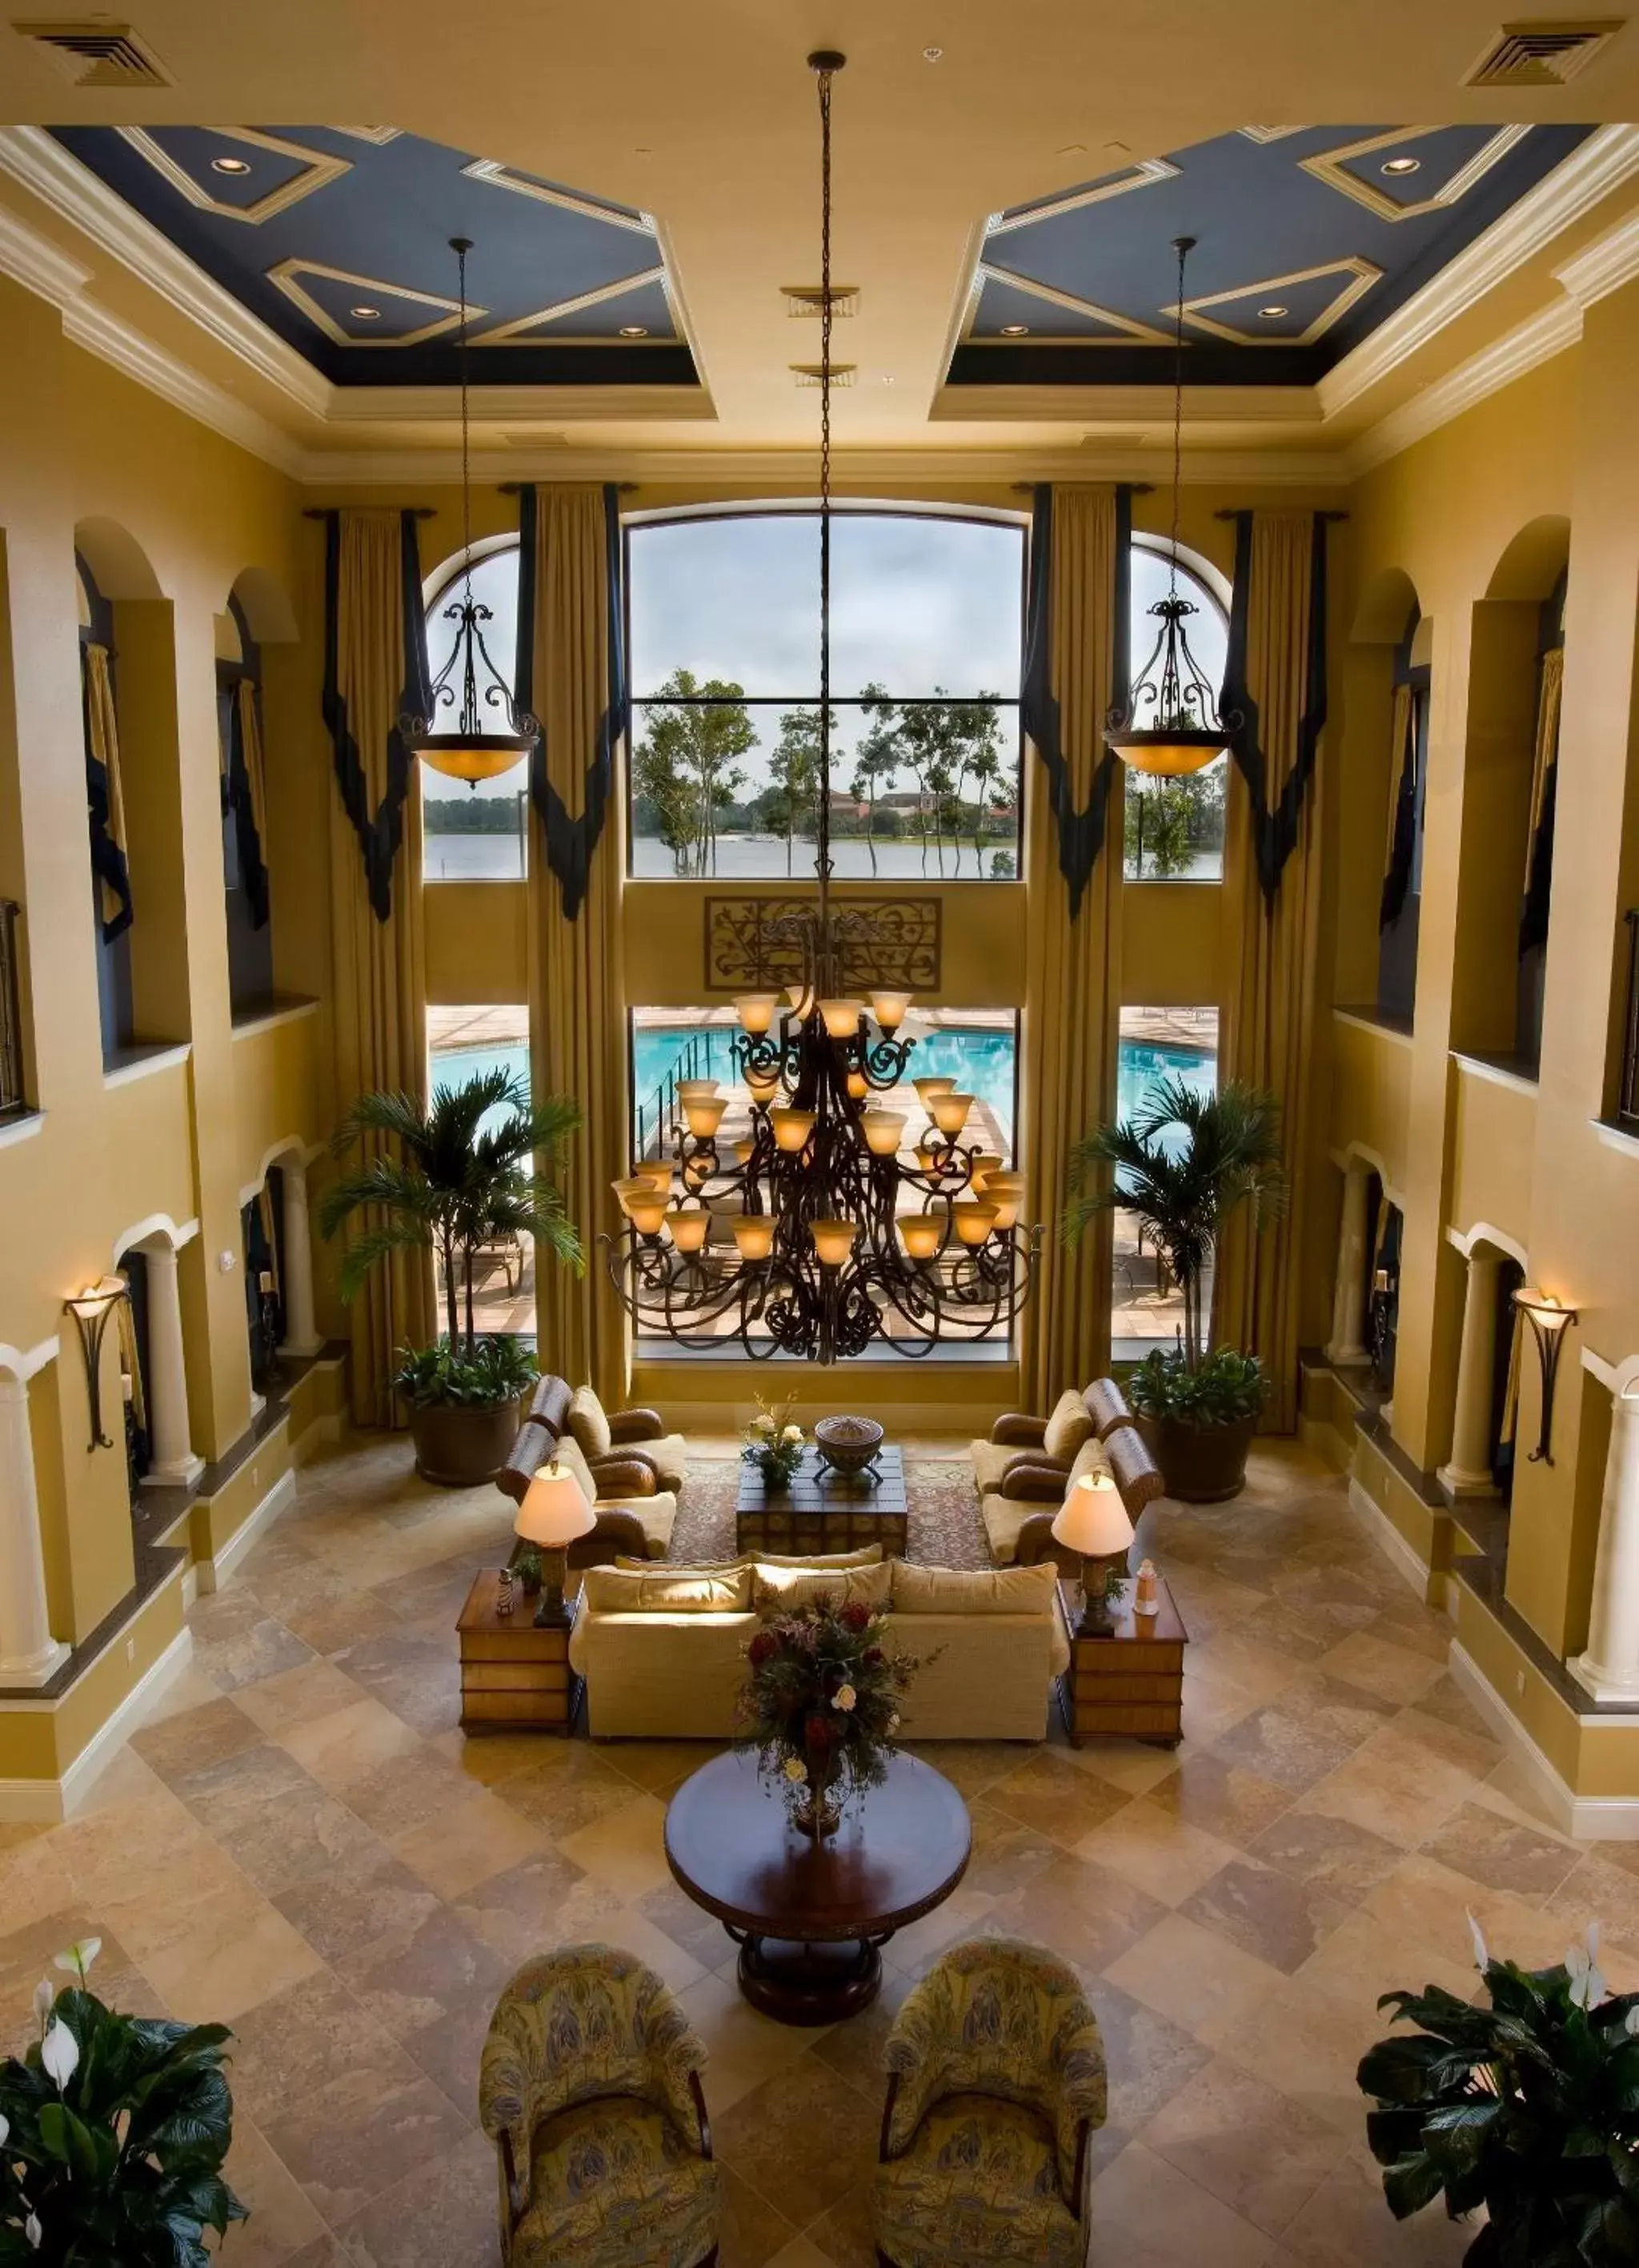 Lobby or reception in The Berkley, Orlando